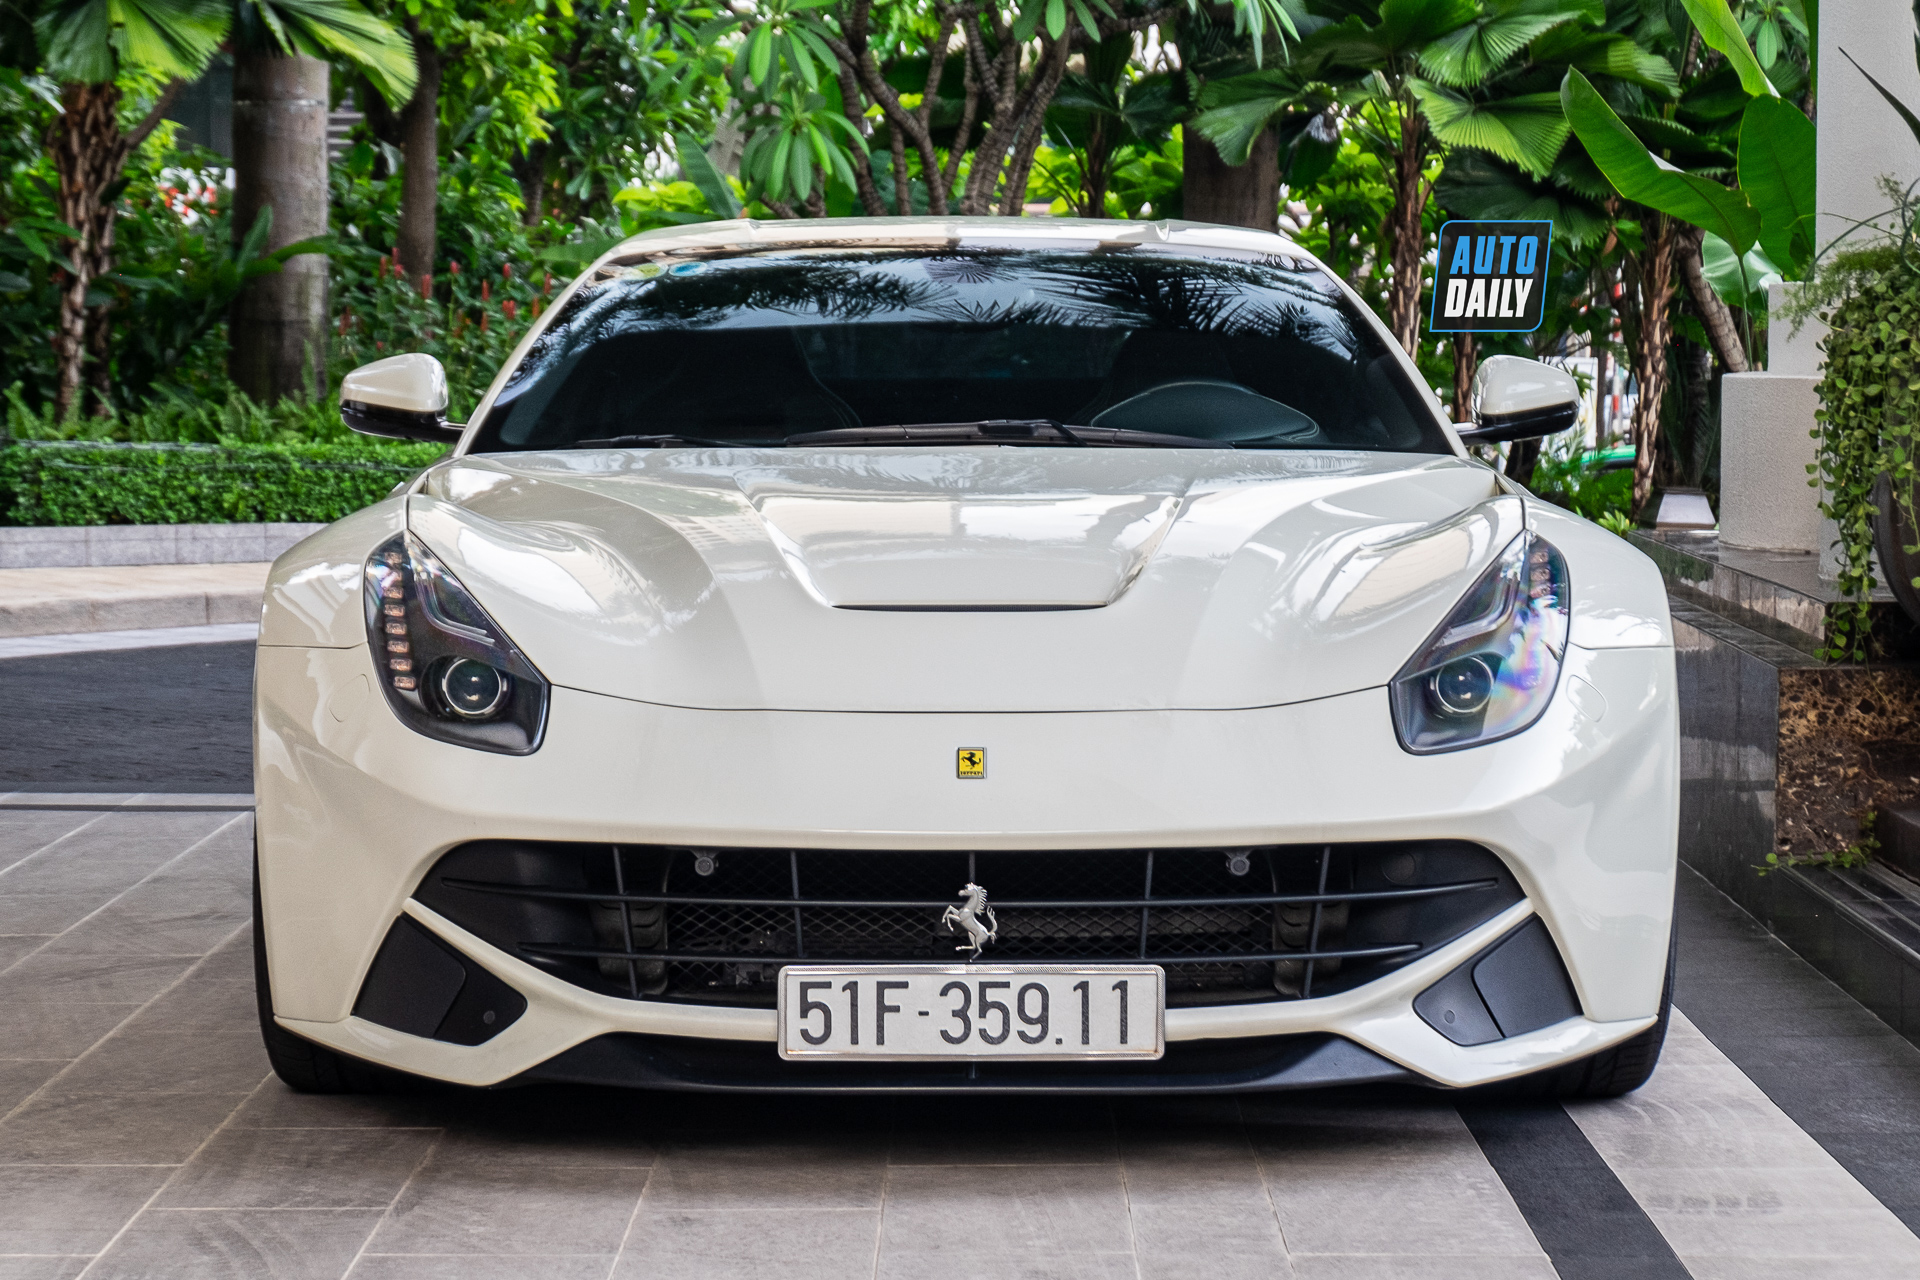 Ferrari F12 màu trắng độc nhất Việt Nam tái xuất trên phố, 6 năm chạy vỏn vẹn 255 km ferrari-f12-berlinetta-mau-trang-doc-nhat-cafeautovn-5.JPG